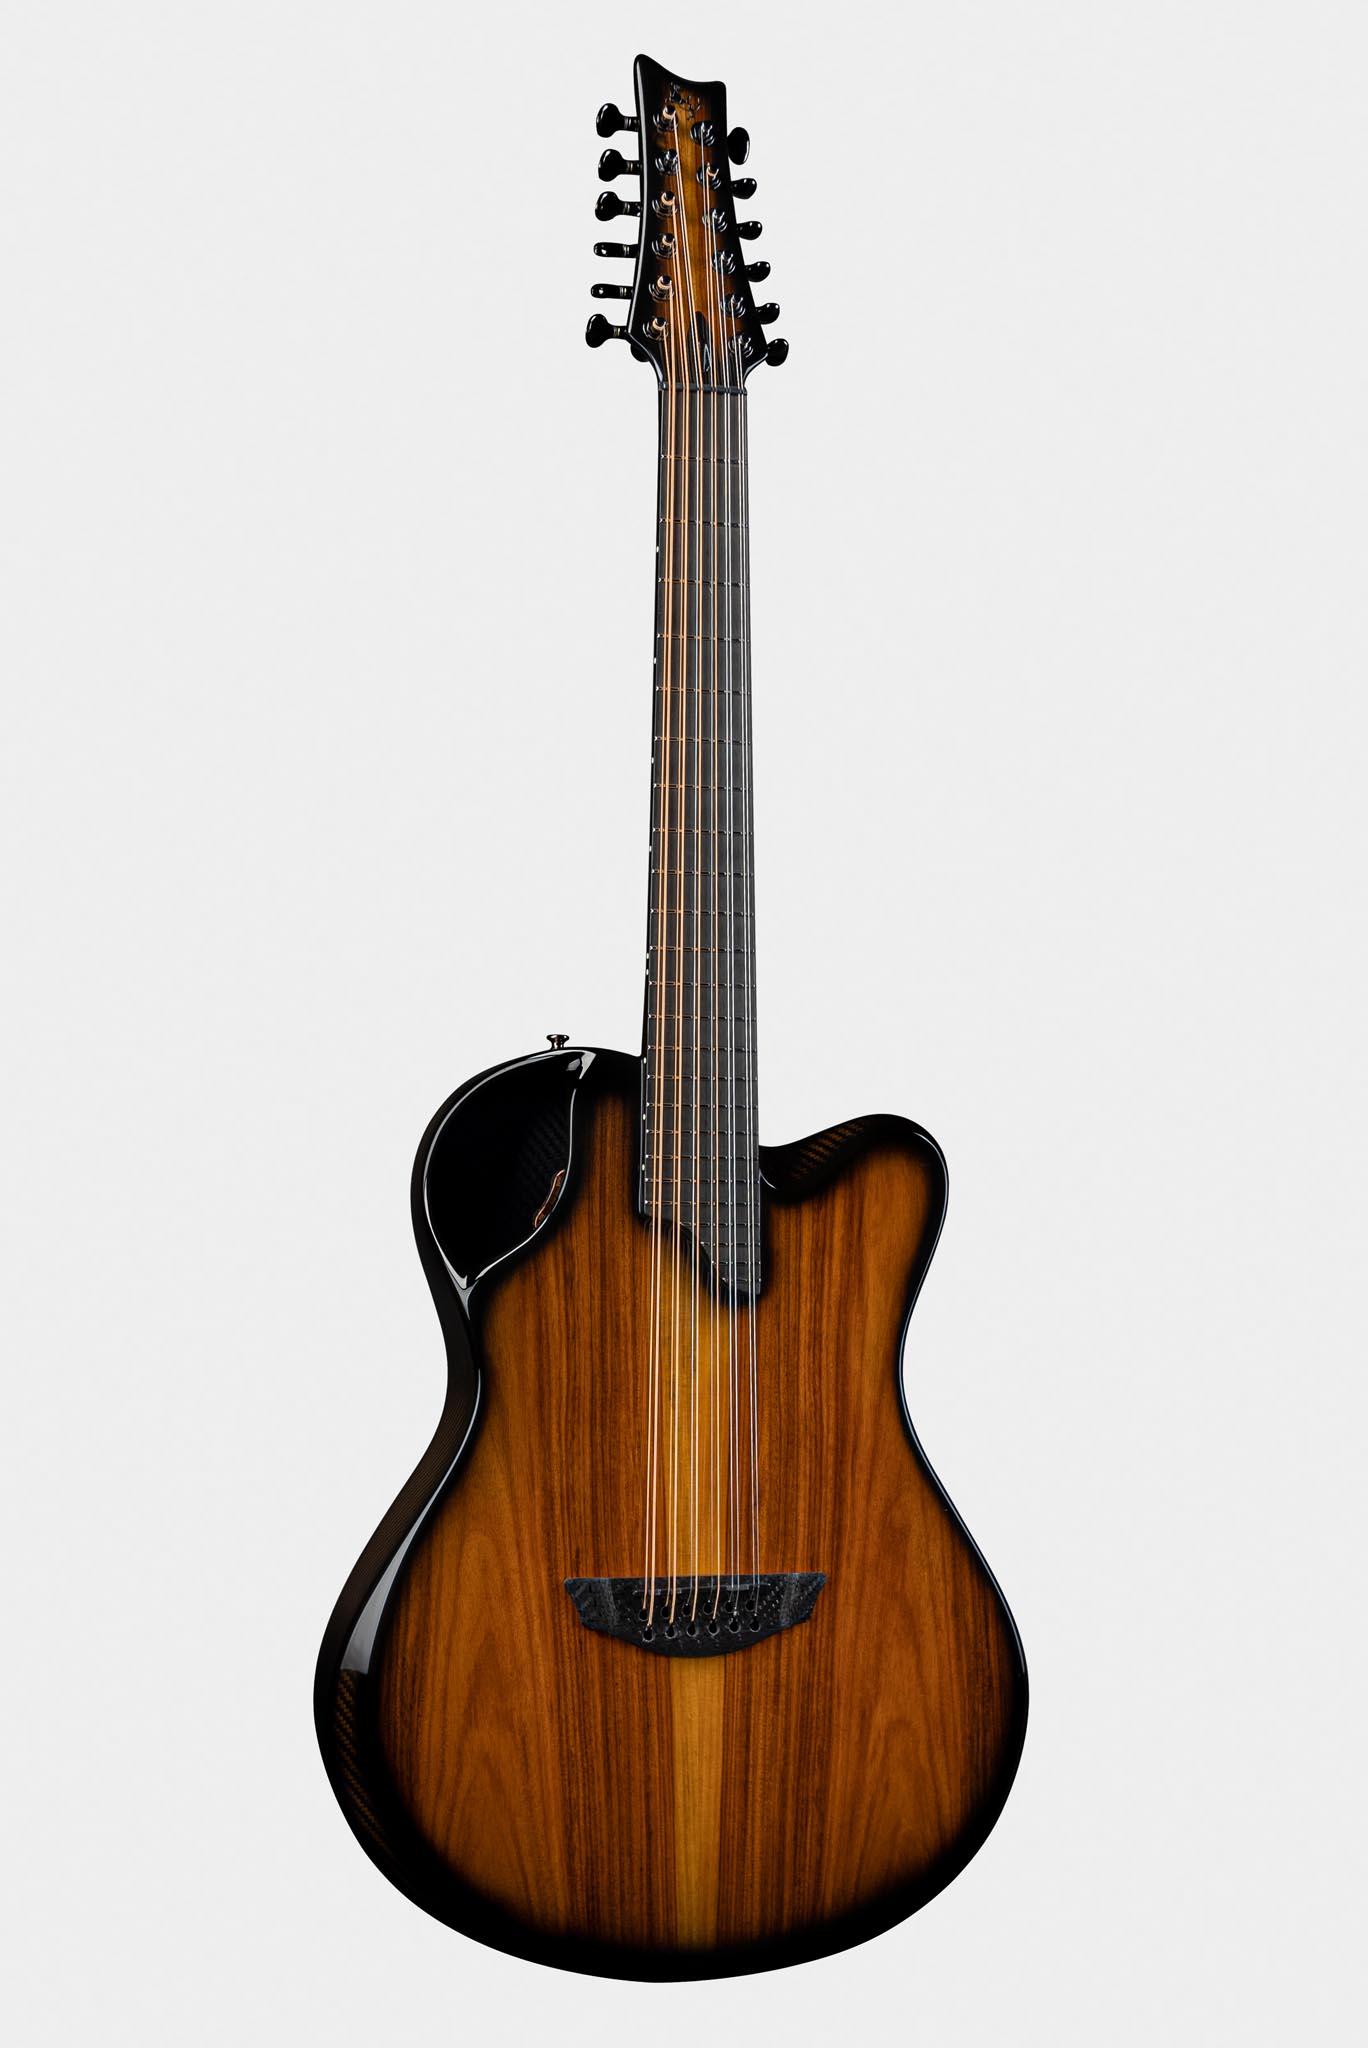 Emerald X20-12 Pau Ferro Guitar Made of Carbon Fiber